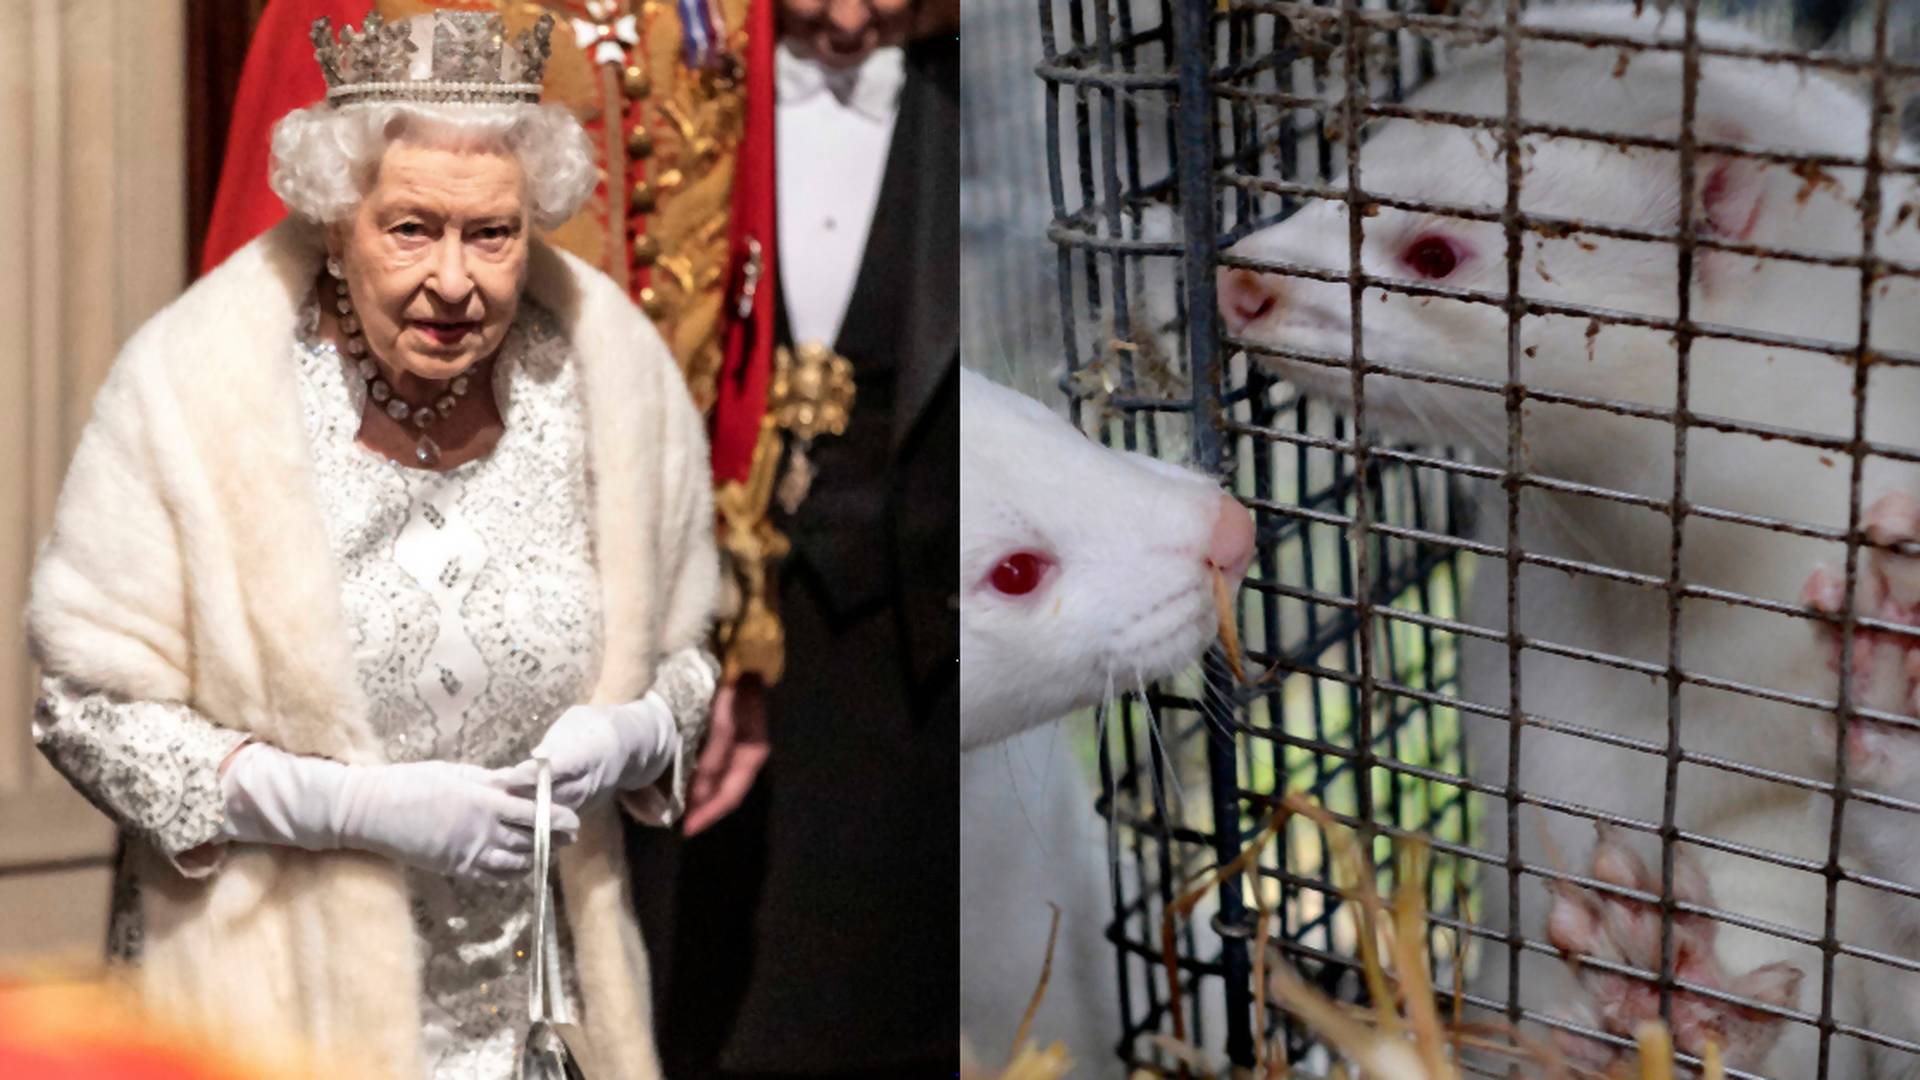 Kráľovná Alžbeta II. sa už nechce podieľať na utrpení, končí s kožušinami